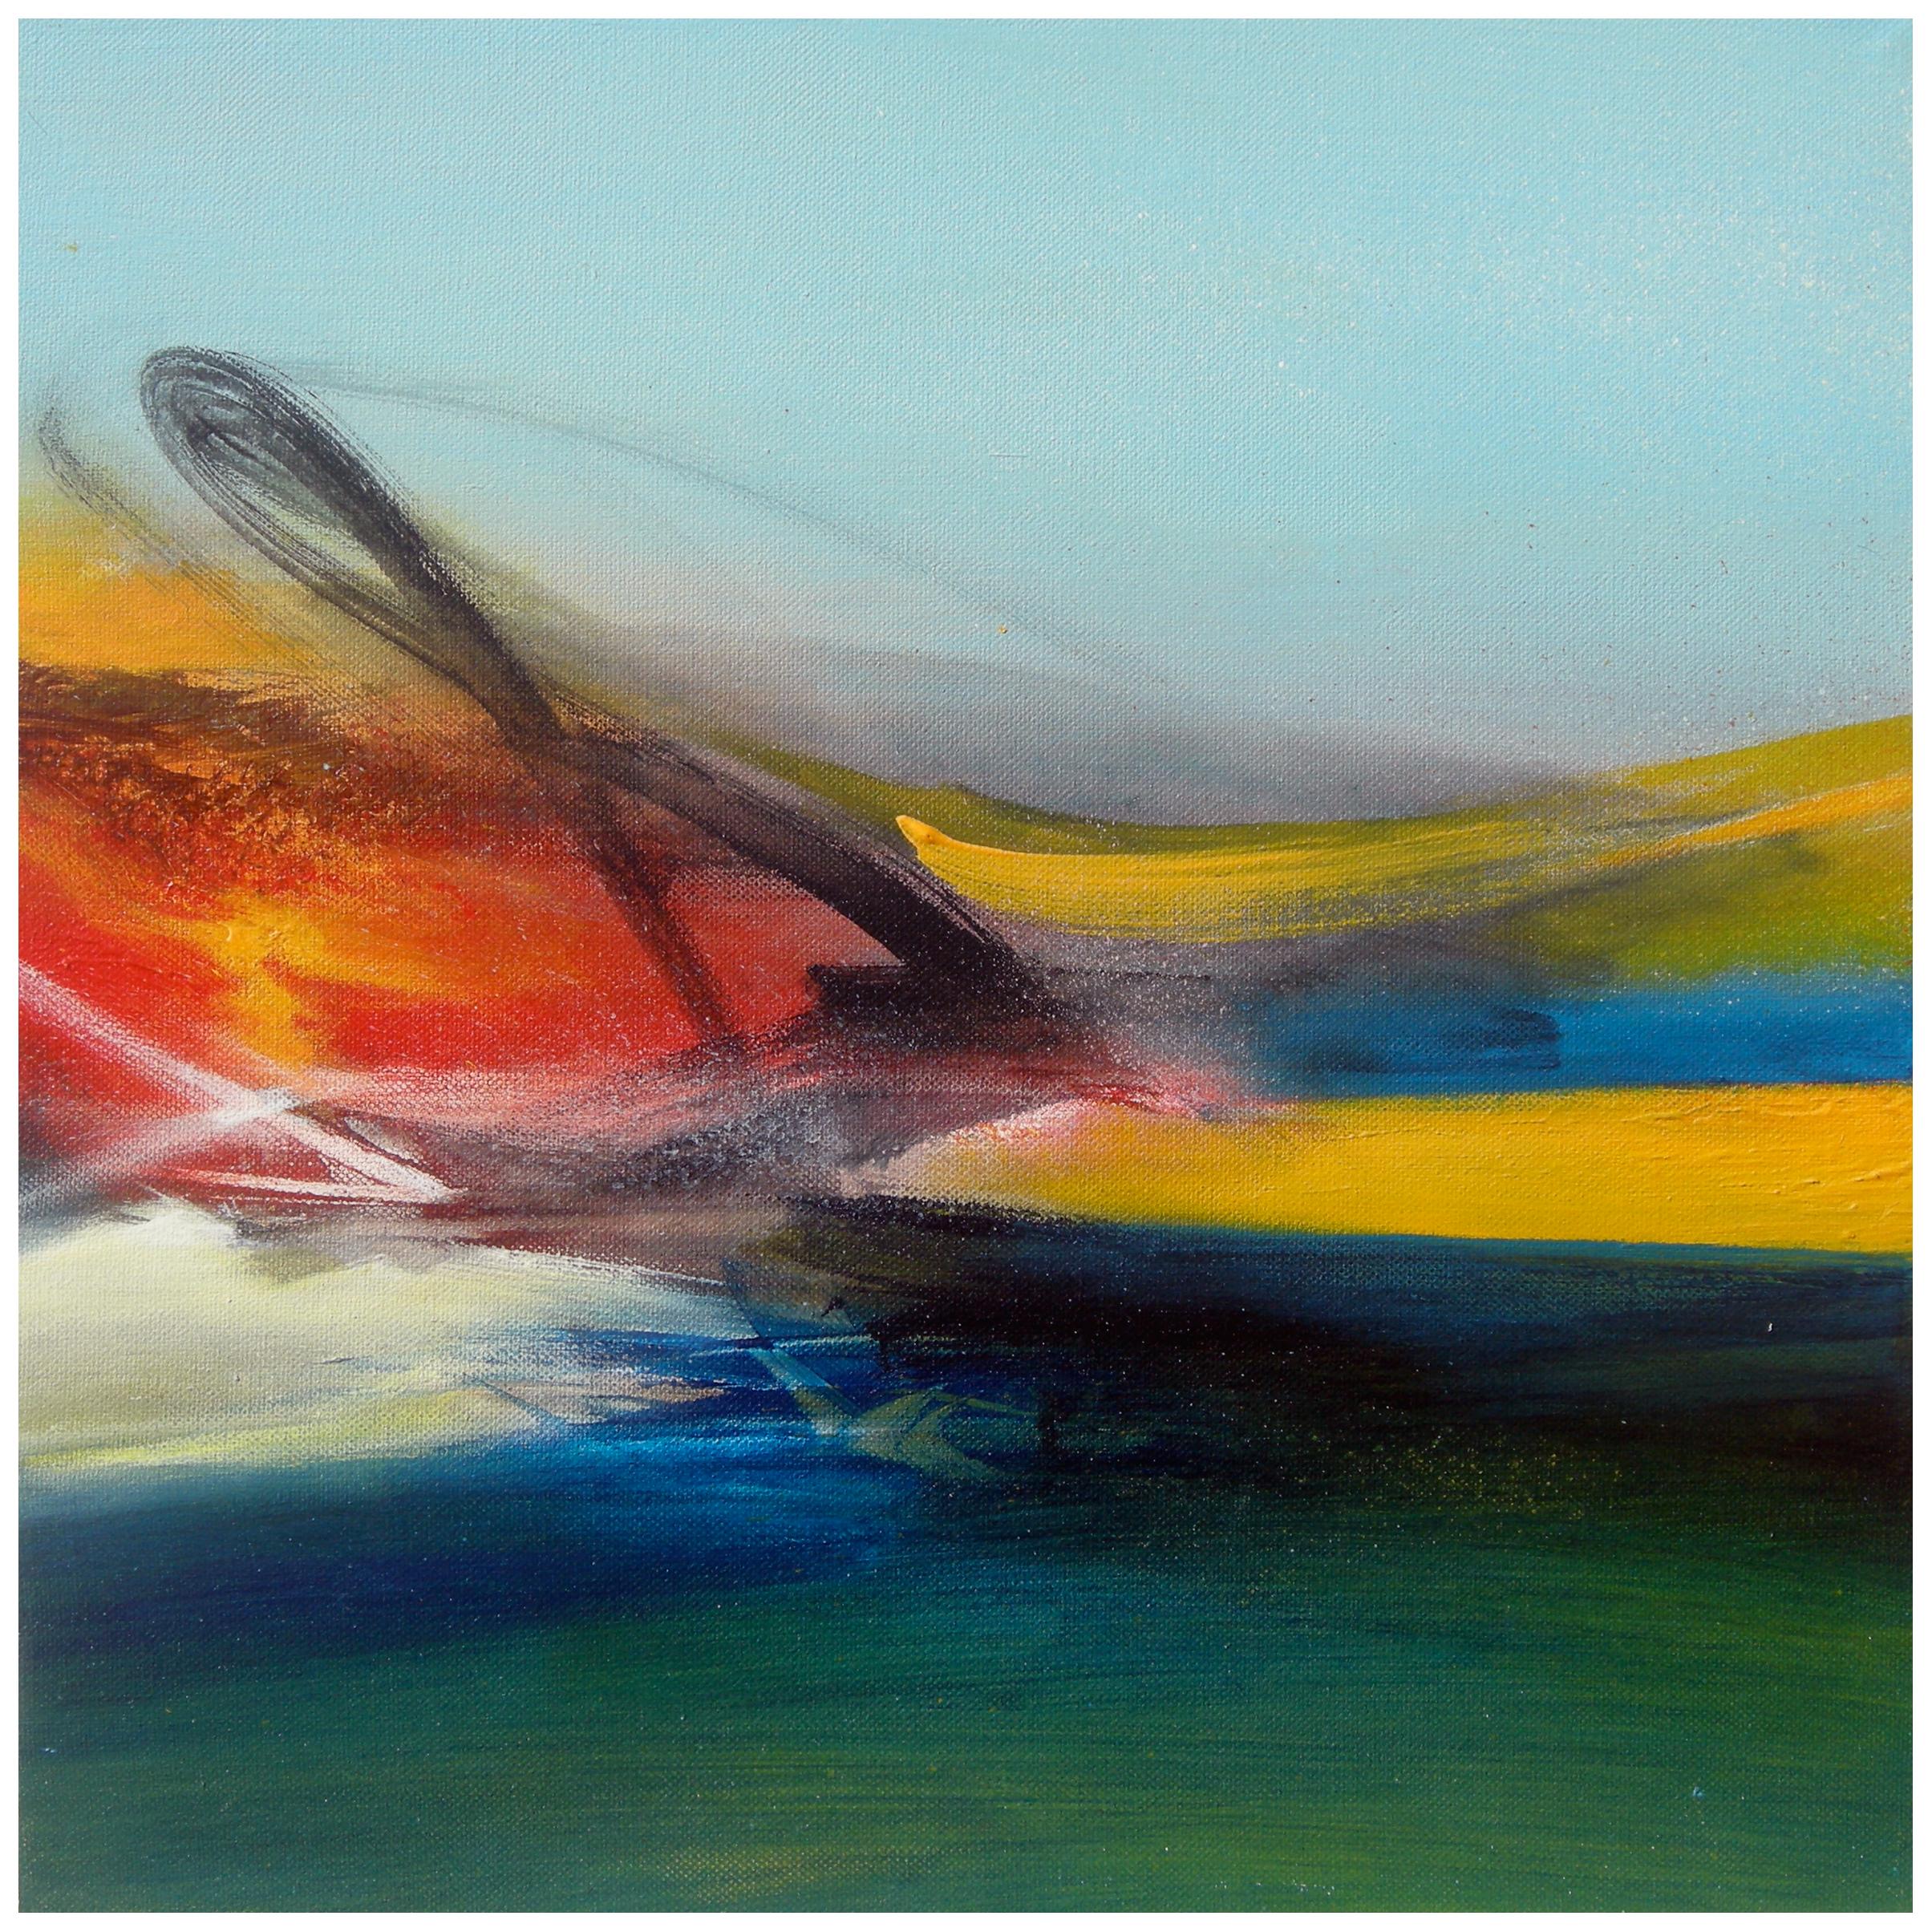 " Paysage imaginaire" Peinture abstraite vert, bleu, jaune et rouge